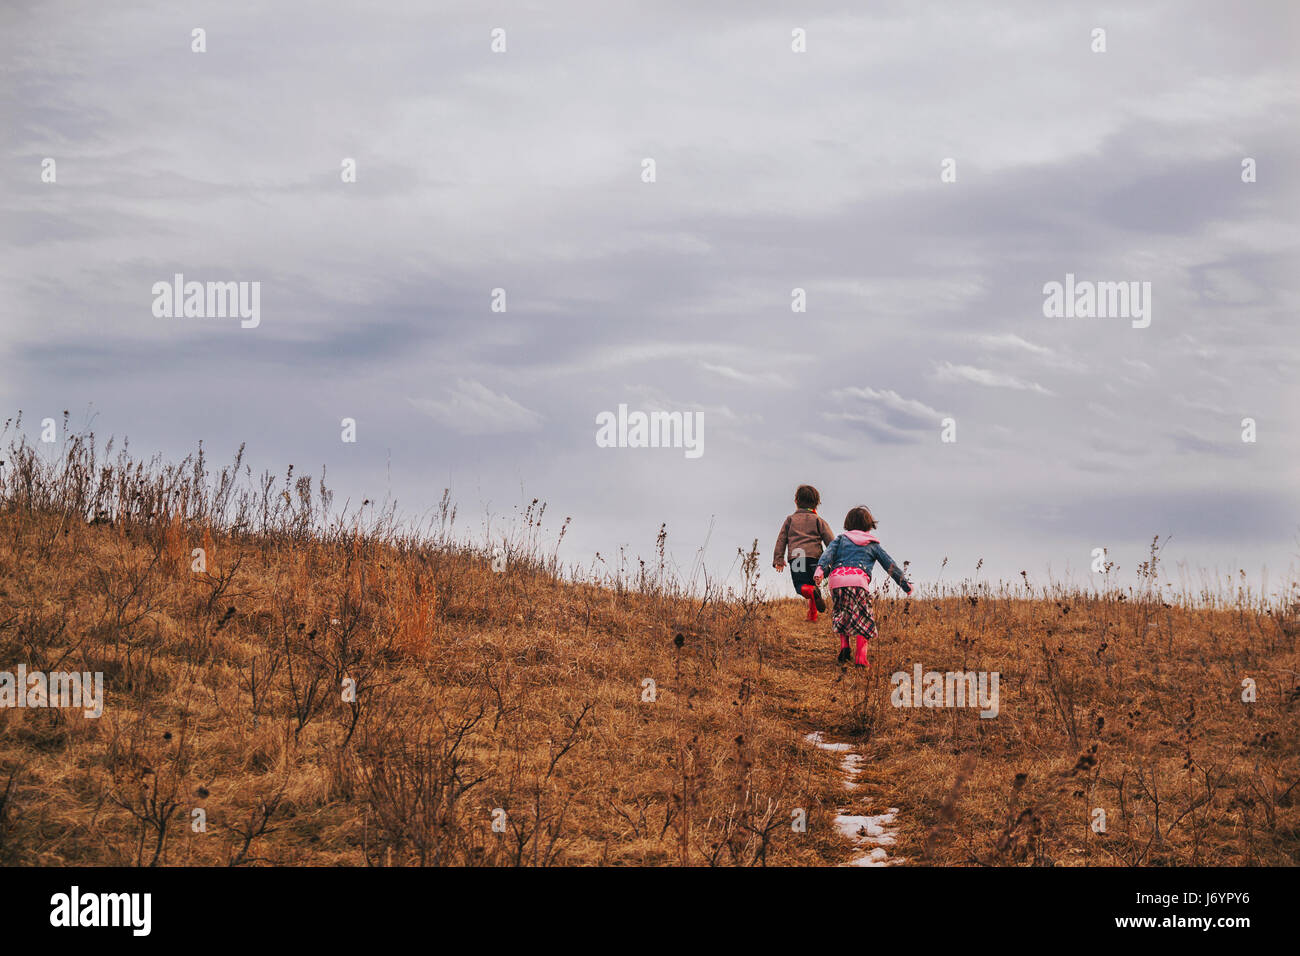 Deux enfants courir vers le haut d'une colline Banque D'Images